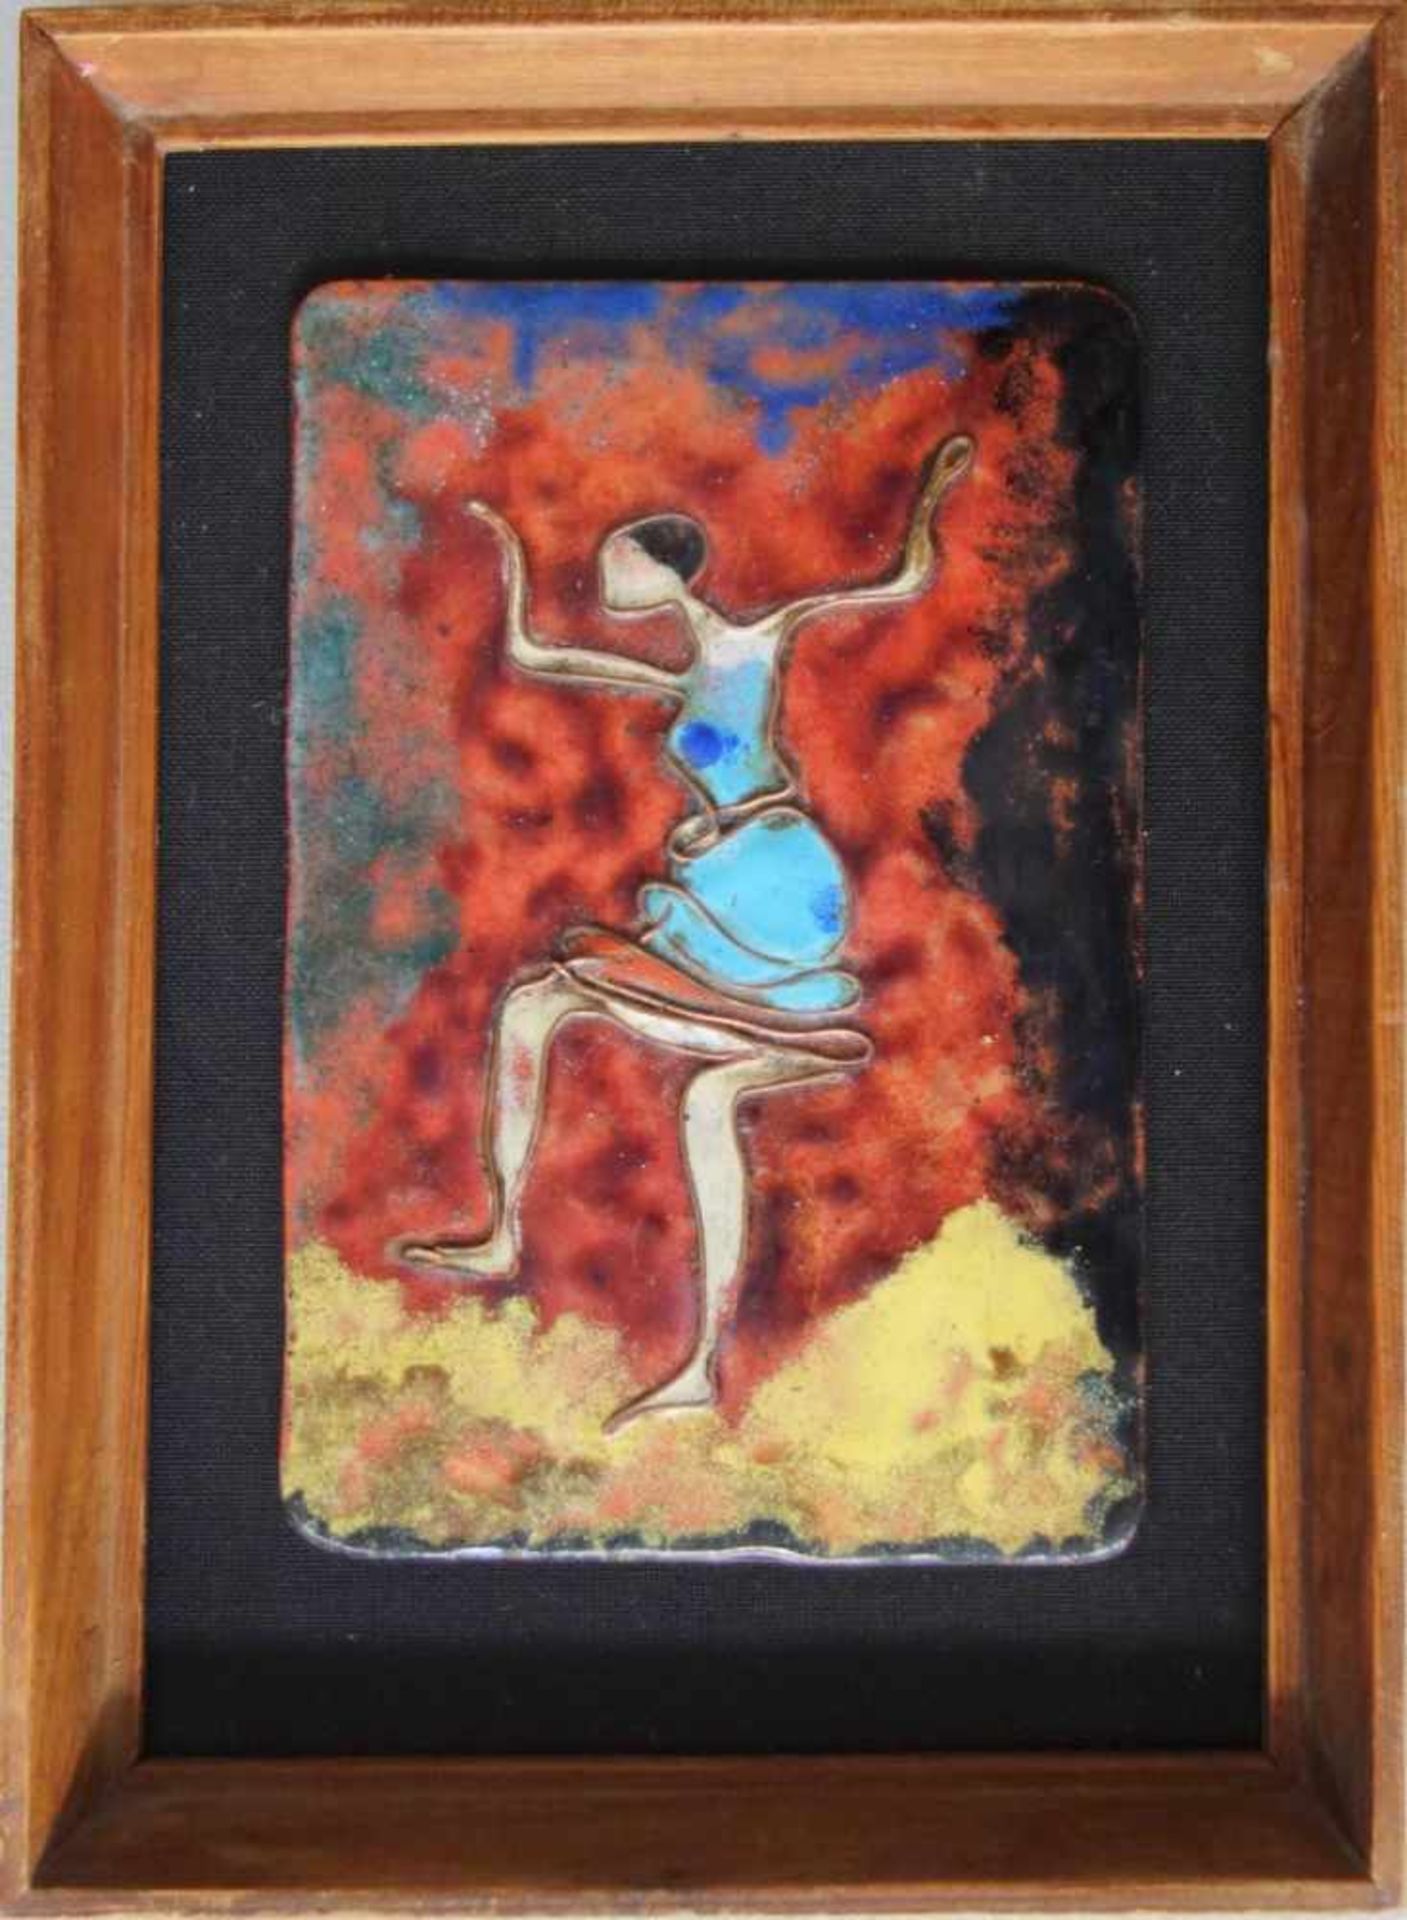 Emaillebild "Tänzerin", 2.Hälfte 20.Jh. Kupferstegemaille, 11,5*8cm, auf Stoffgrund, gerahmt